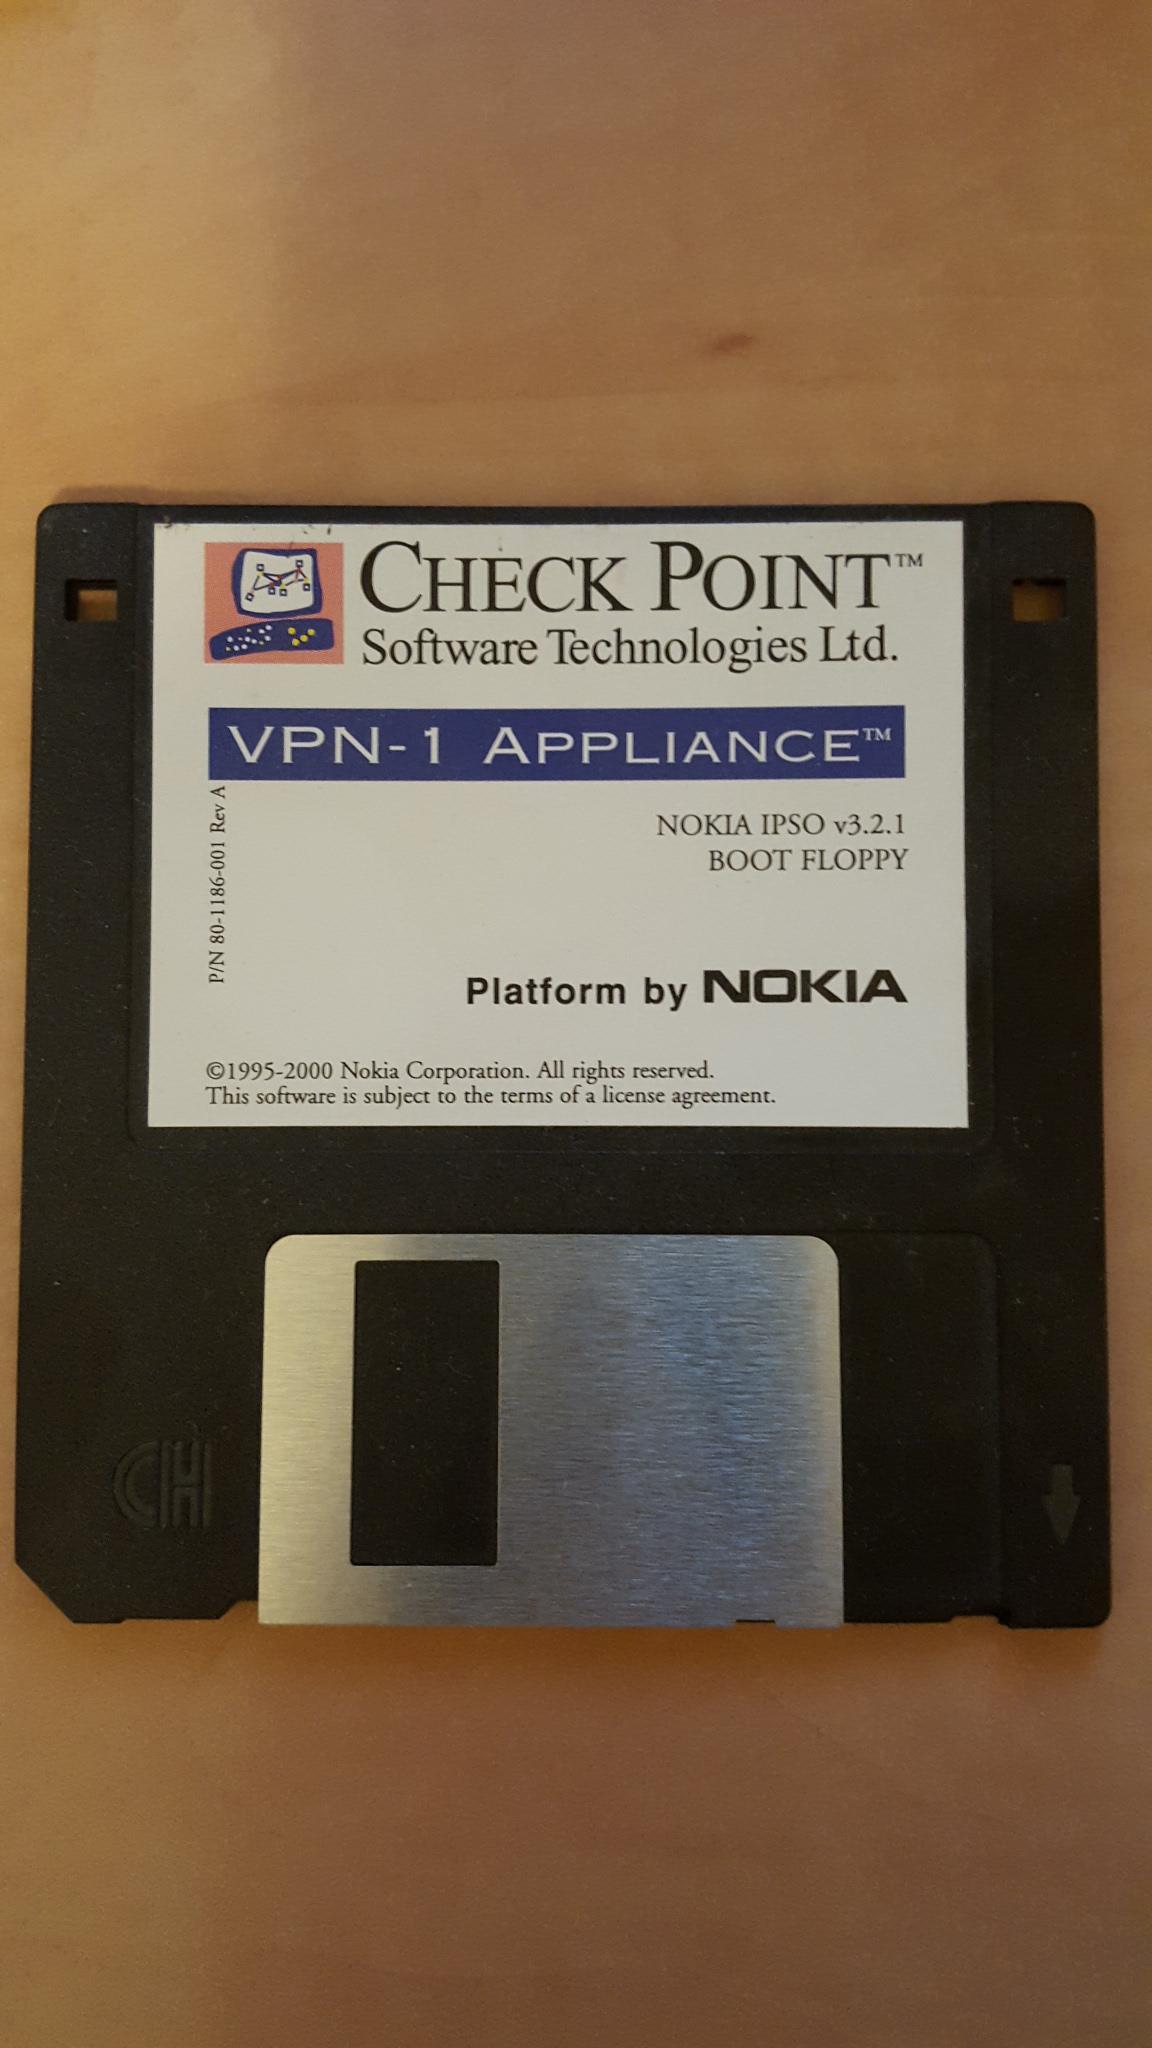 Nokia IPSO v3 boot floppy 